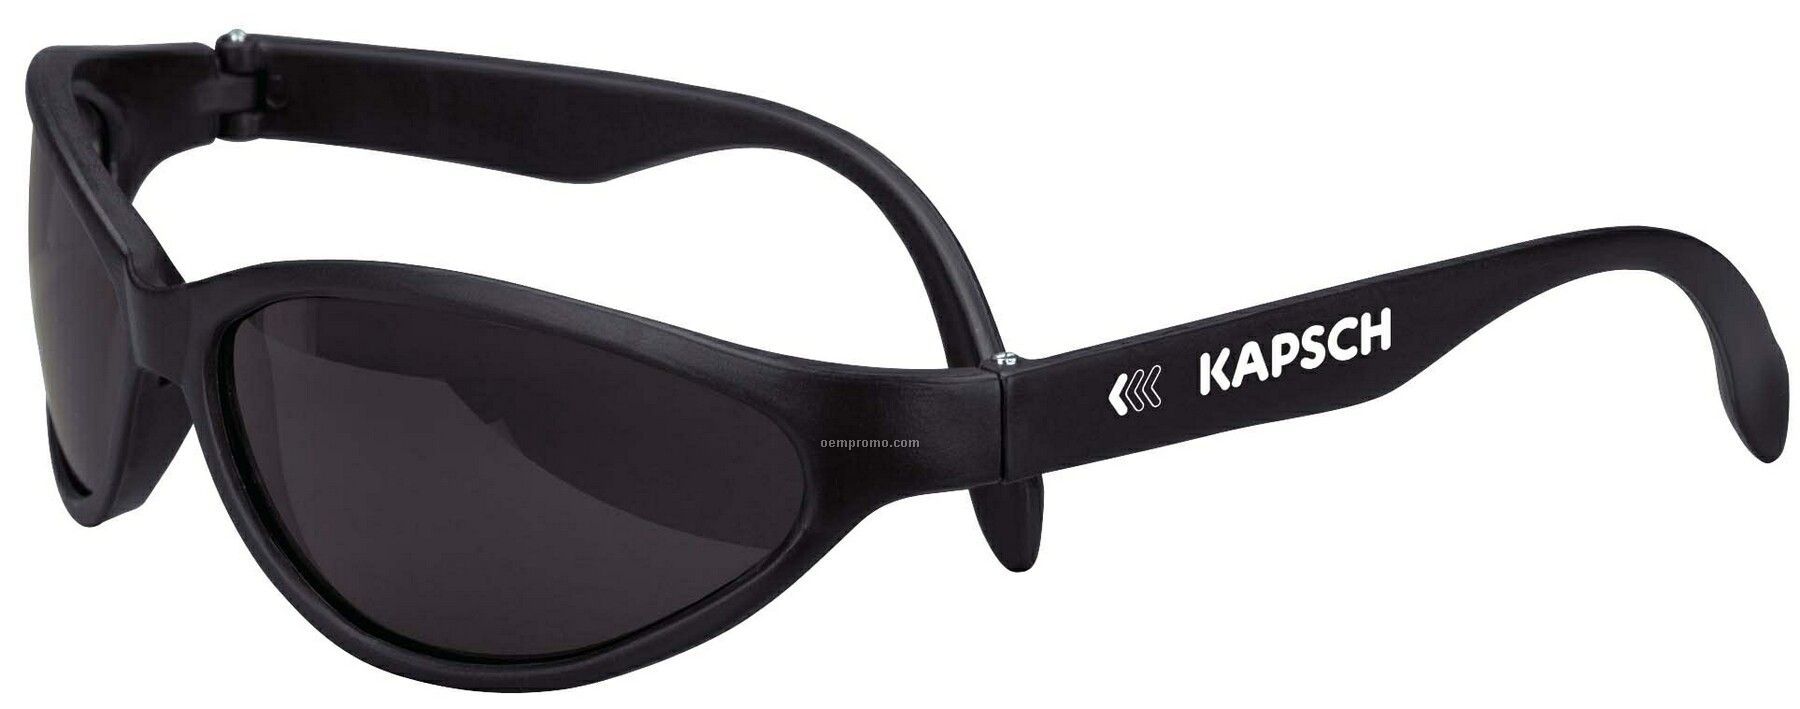 Action Line Sport Sunglasses / Black